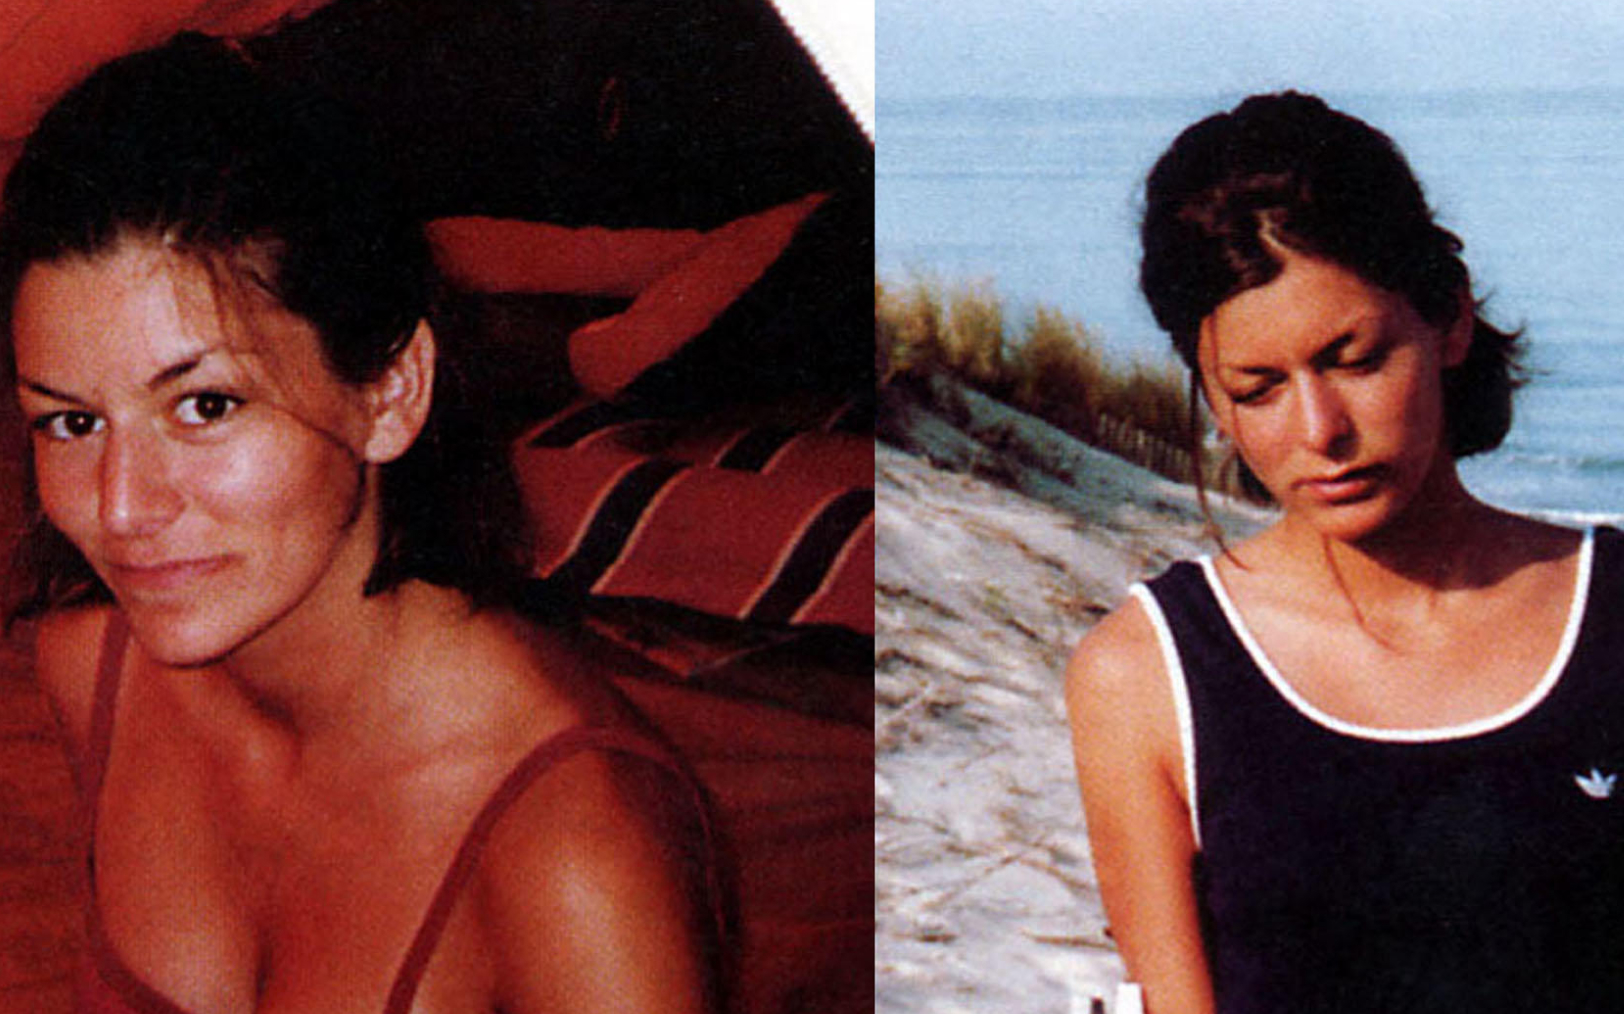 Silja Trindler avait été retrouvée morte dans les dunes de Carcans plage le 5 août 2000. AFP/Gendarmerie nationale